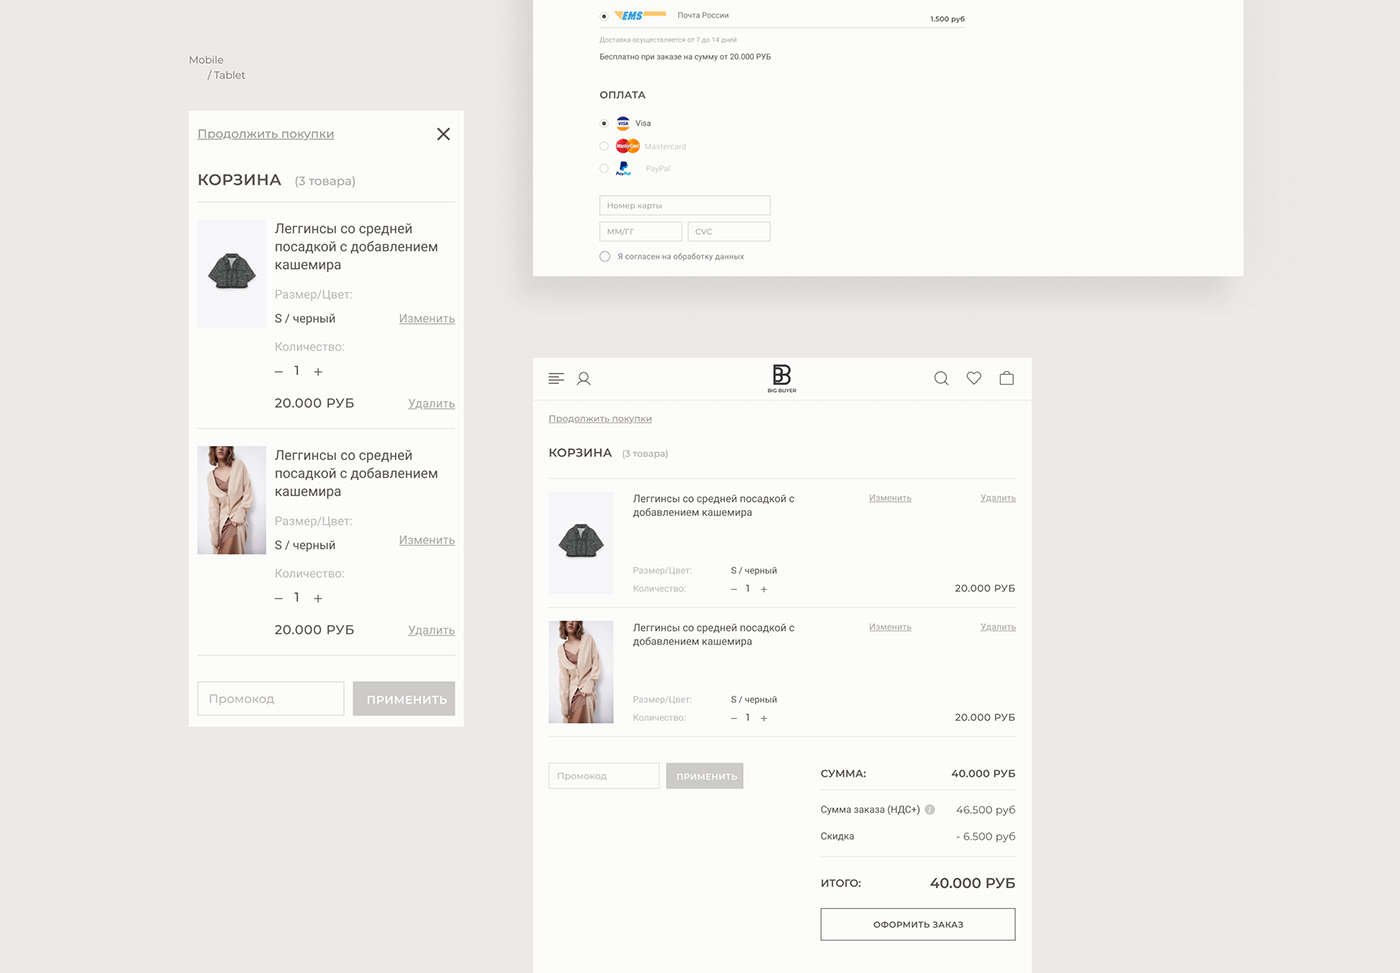 e-commerce Fashion  serenity UI/UX Web Design 